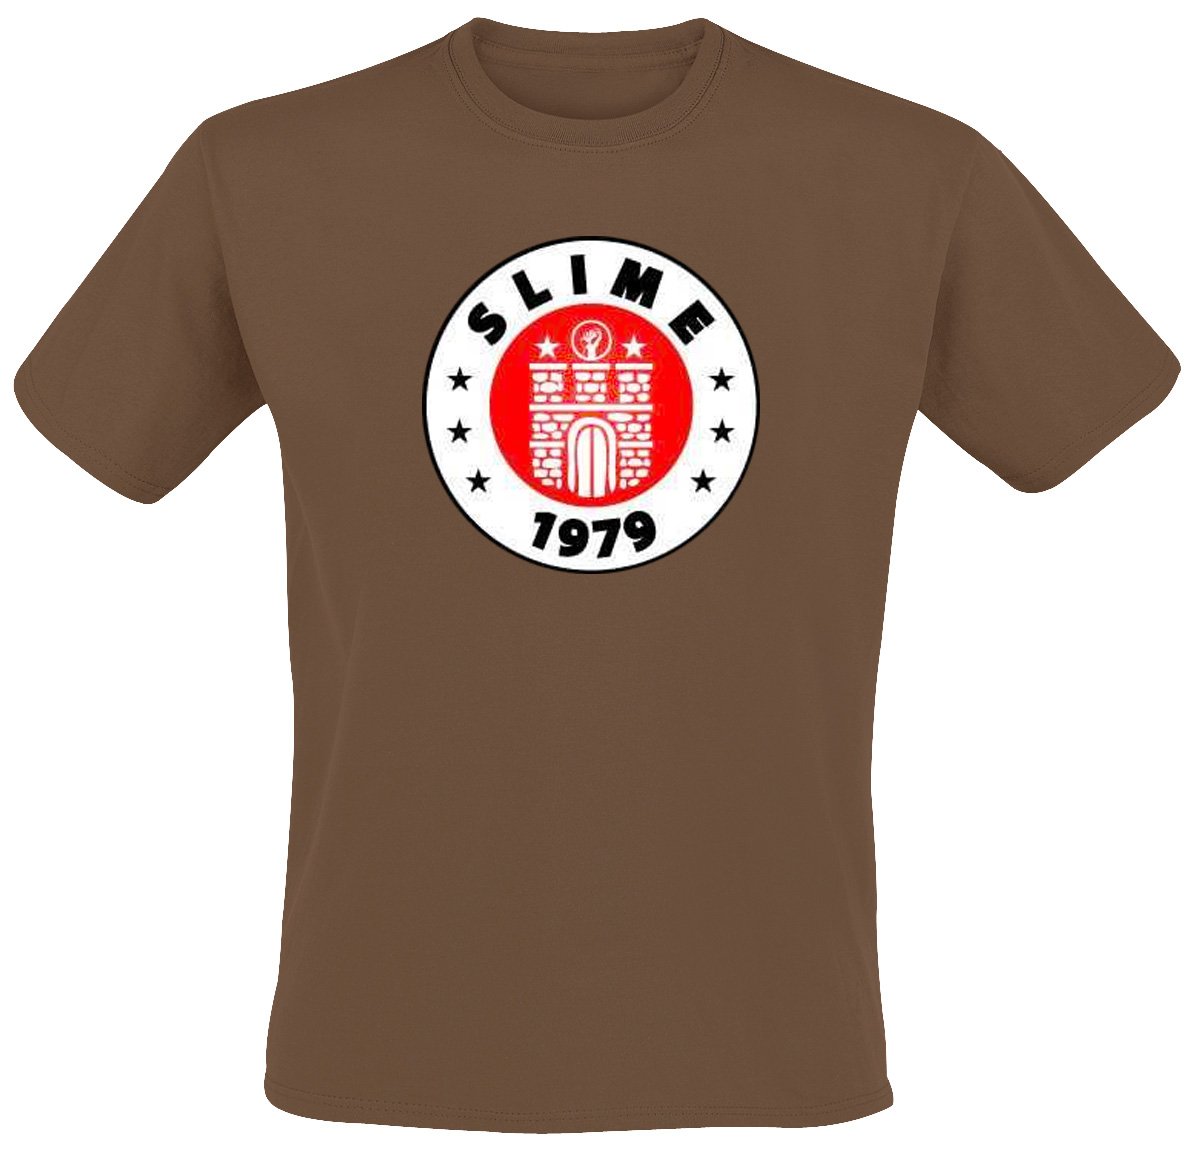 Slime - St. Pauli T-Shirt, braun, Grösse XL